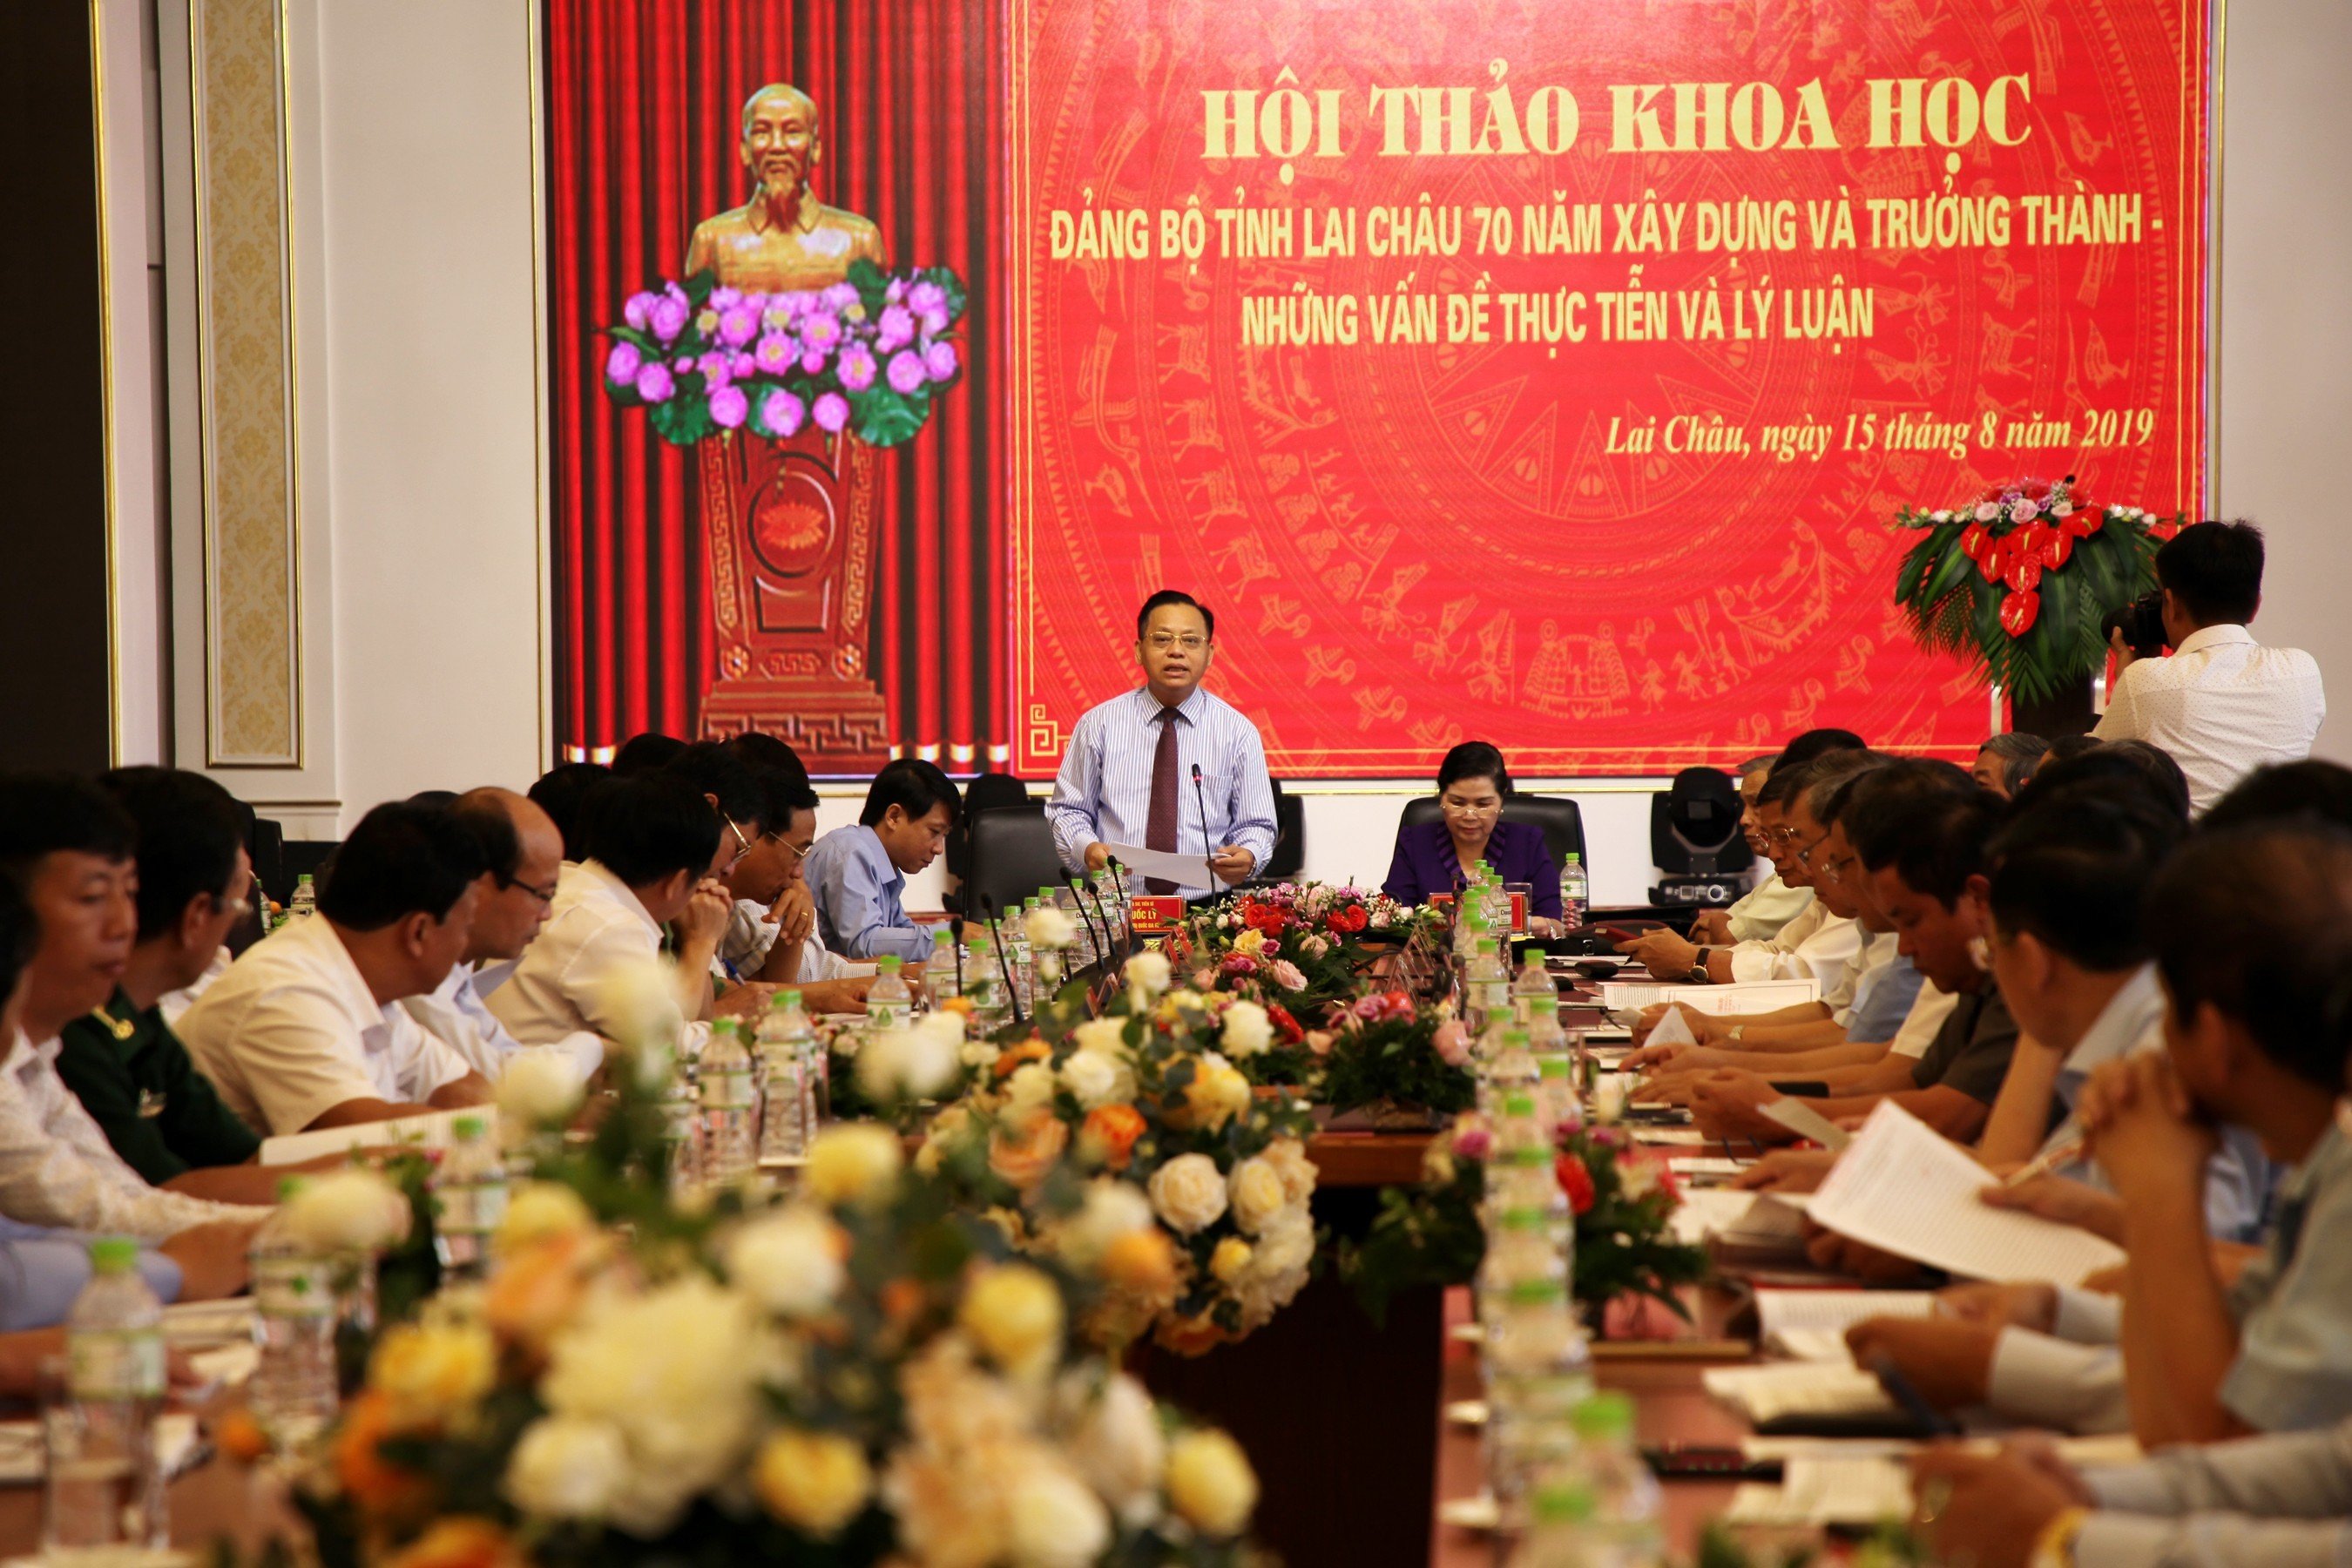 Tỉnh ủy Lai Châu phối hợp với Học viện Chính trị Quốc gia Hồ Chí Minh tổ chức Hội thảo khoa học (năm 2019)